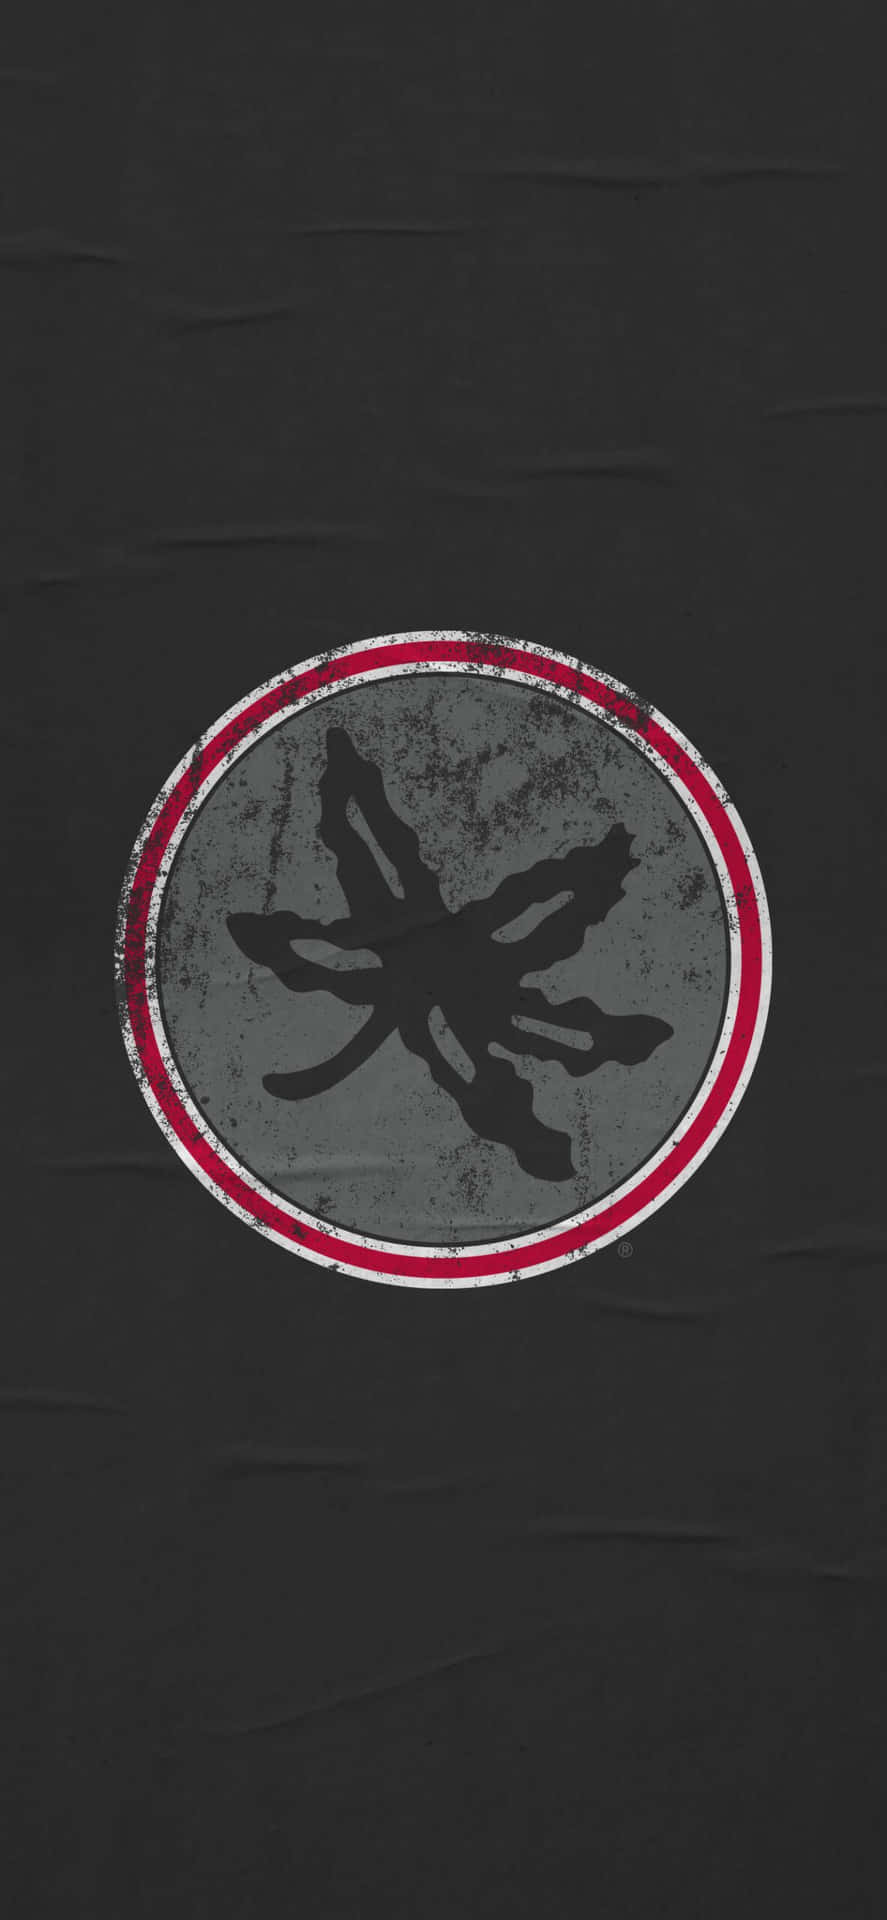 Unacamiseta Negra Con Un Logo Rojo Y Blanco Fondo de pantalla